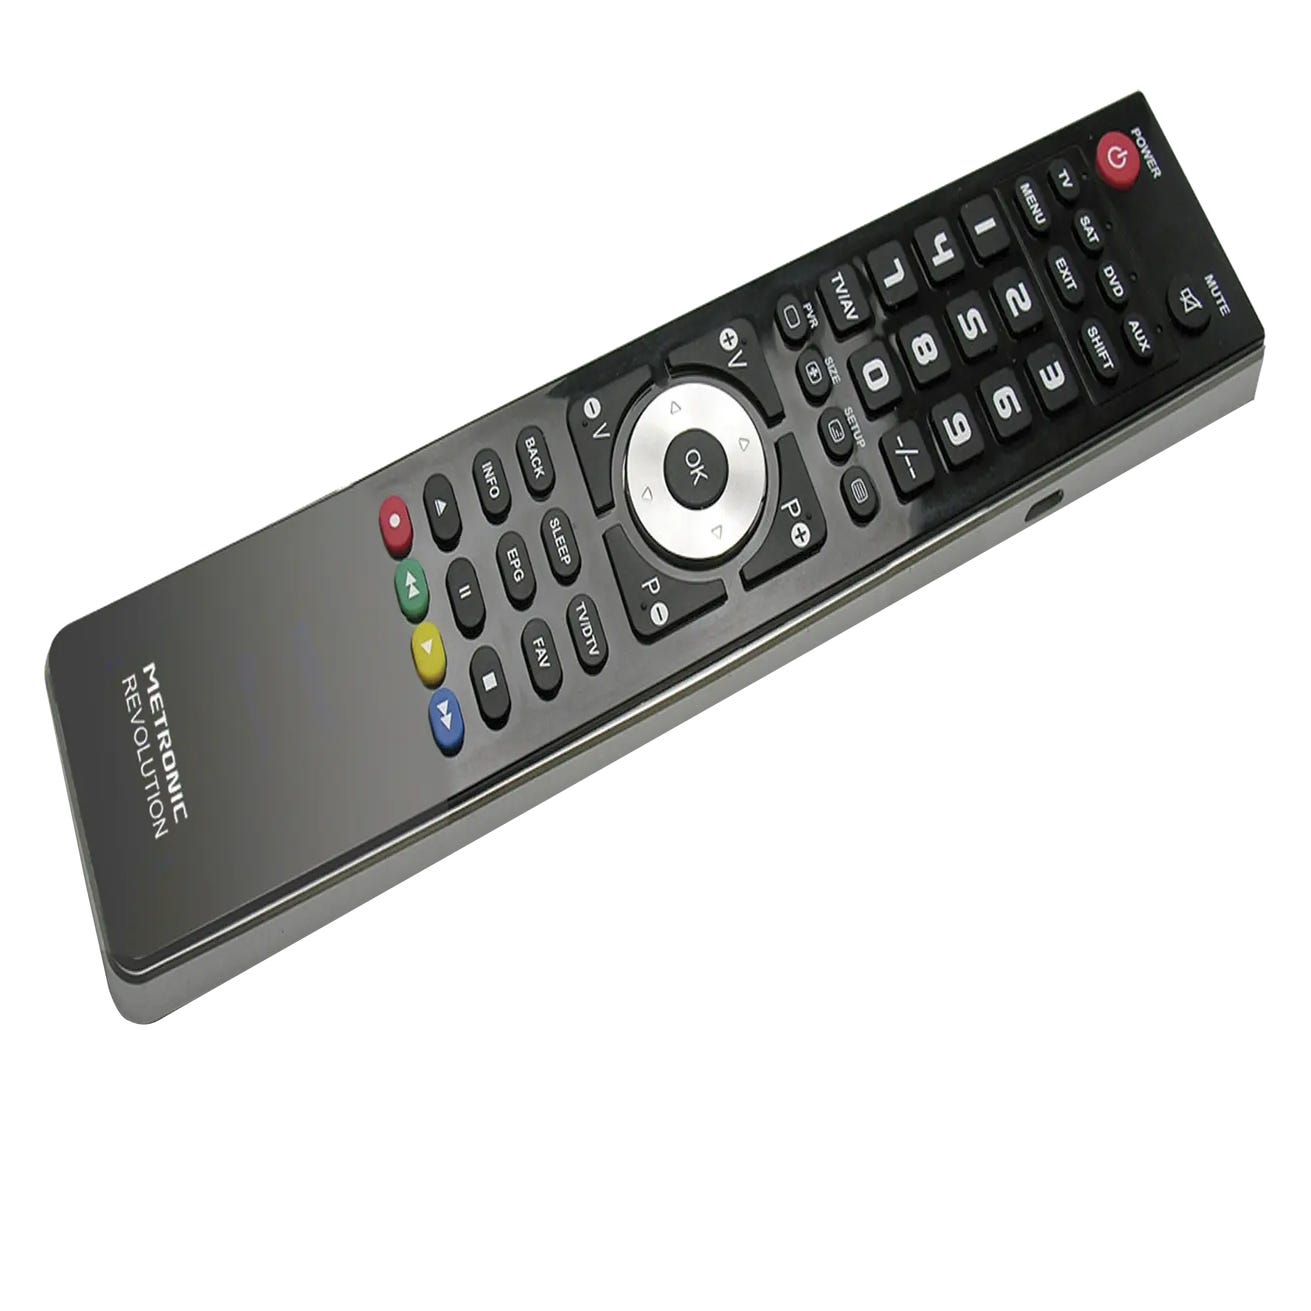 Comprar Mando a distancia de sustitución para TV SAMSUNG · Metronic ·  Hipercor